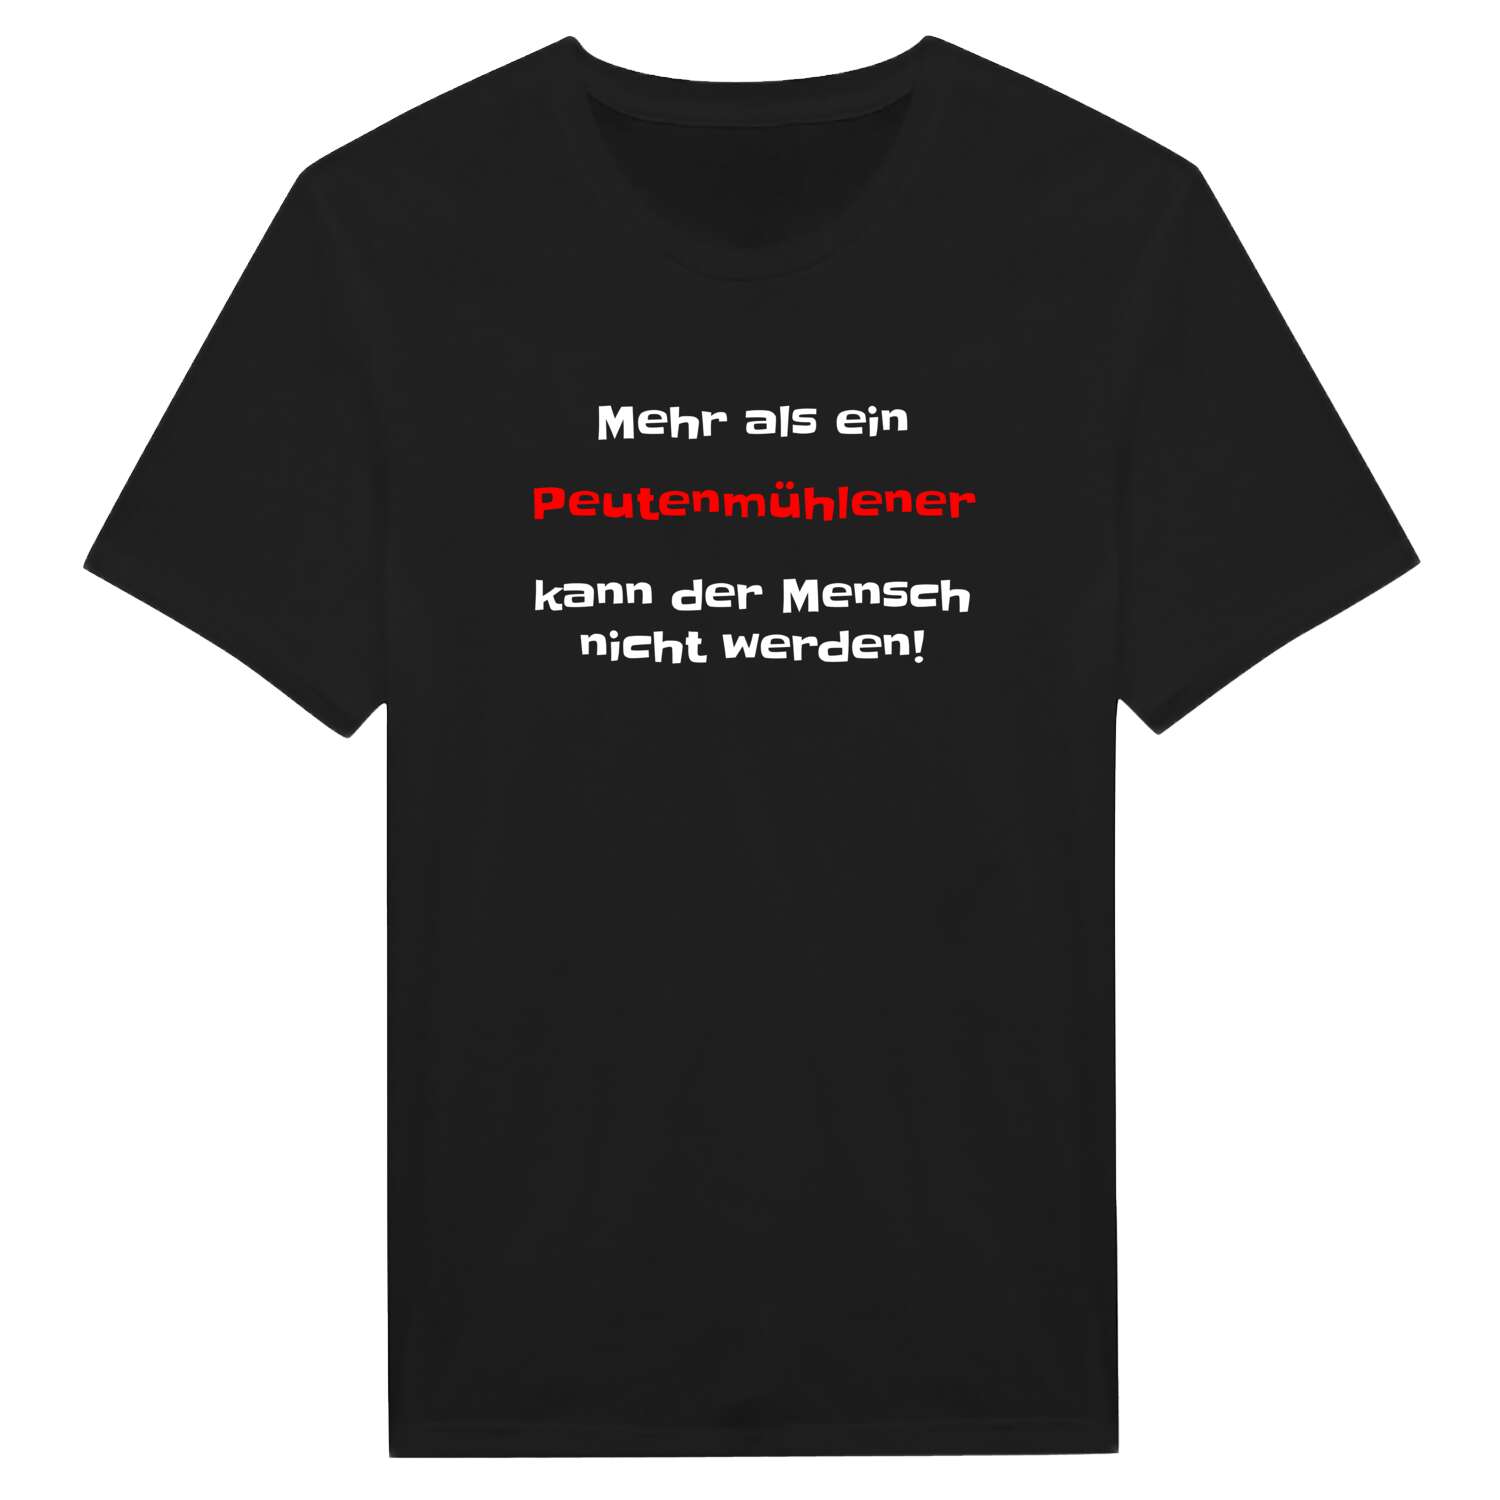 Peutenmühle T-Shirt »Mehr als ein«